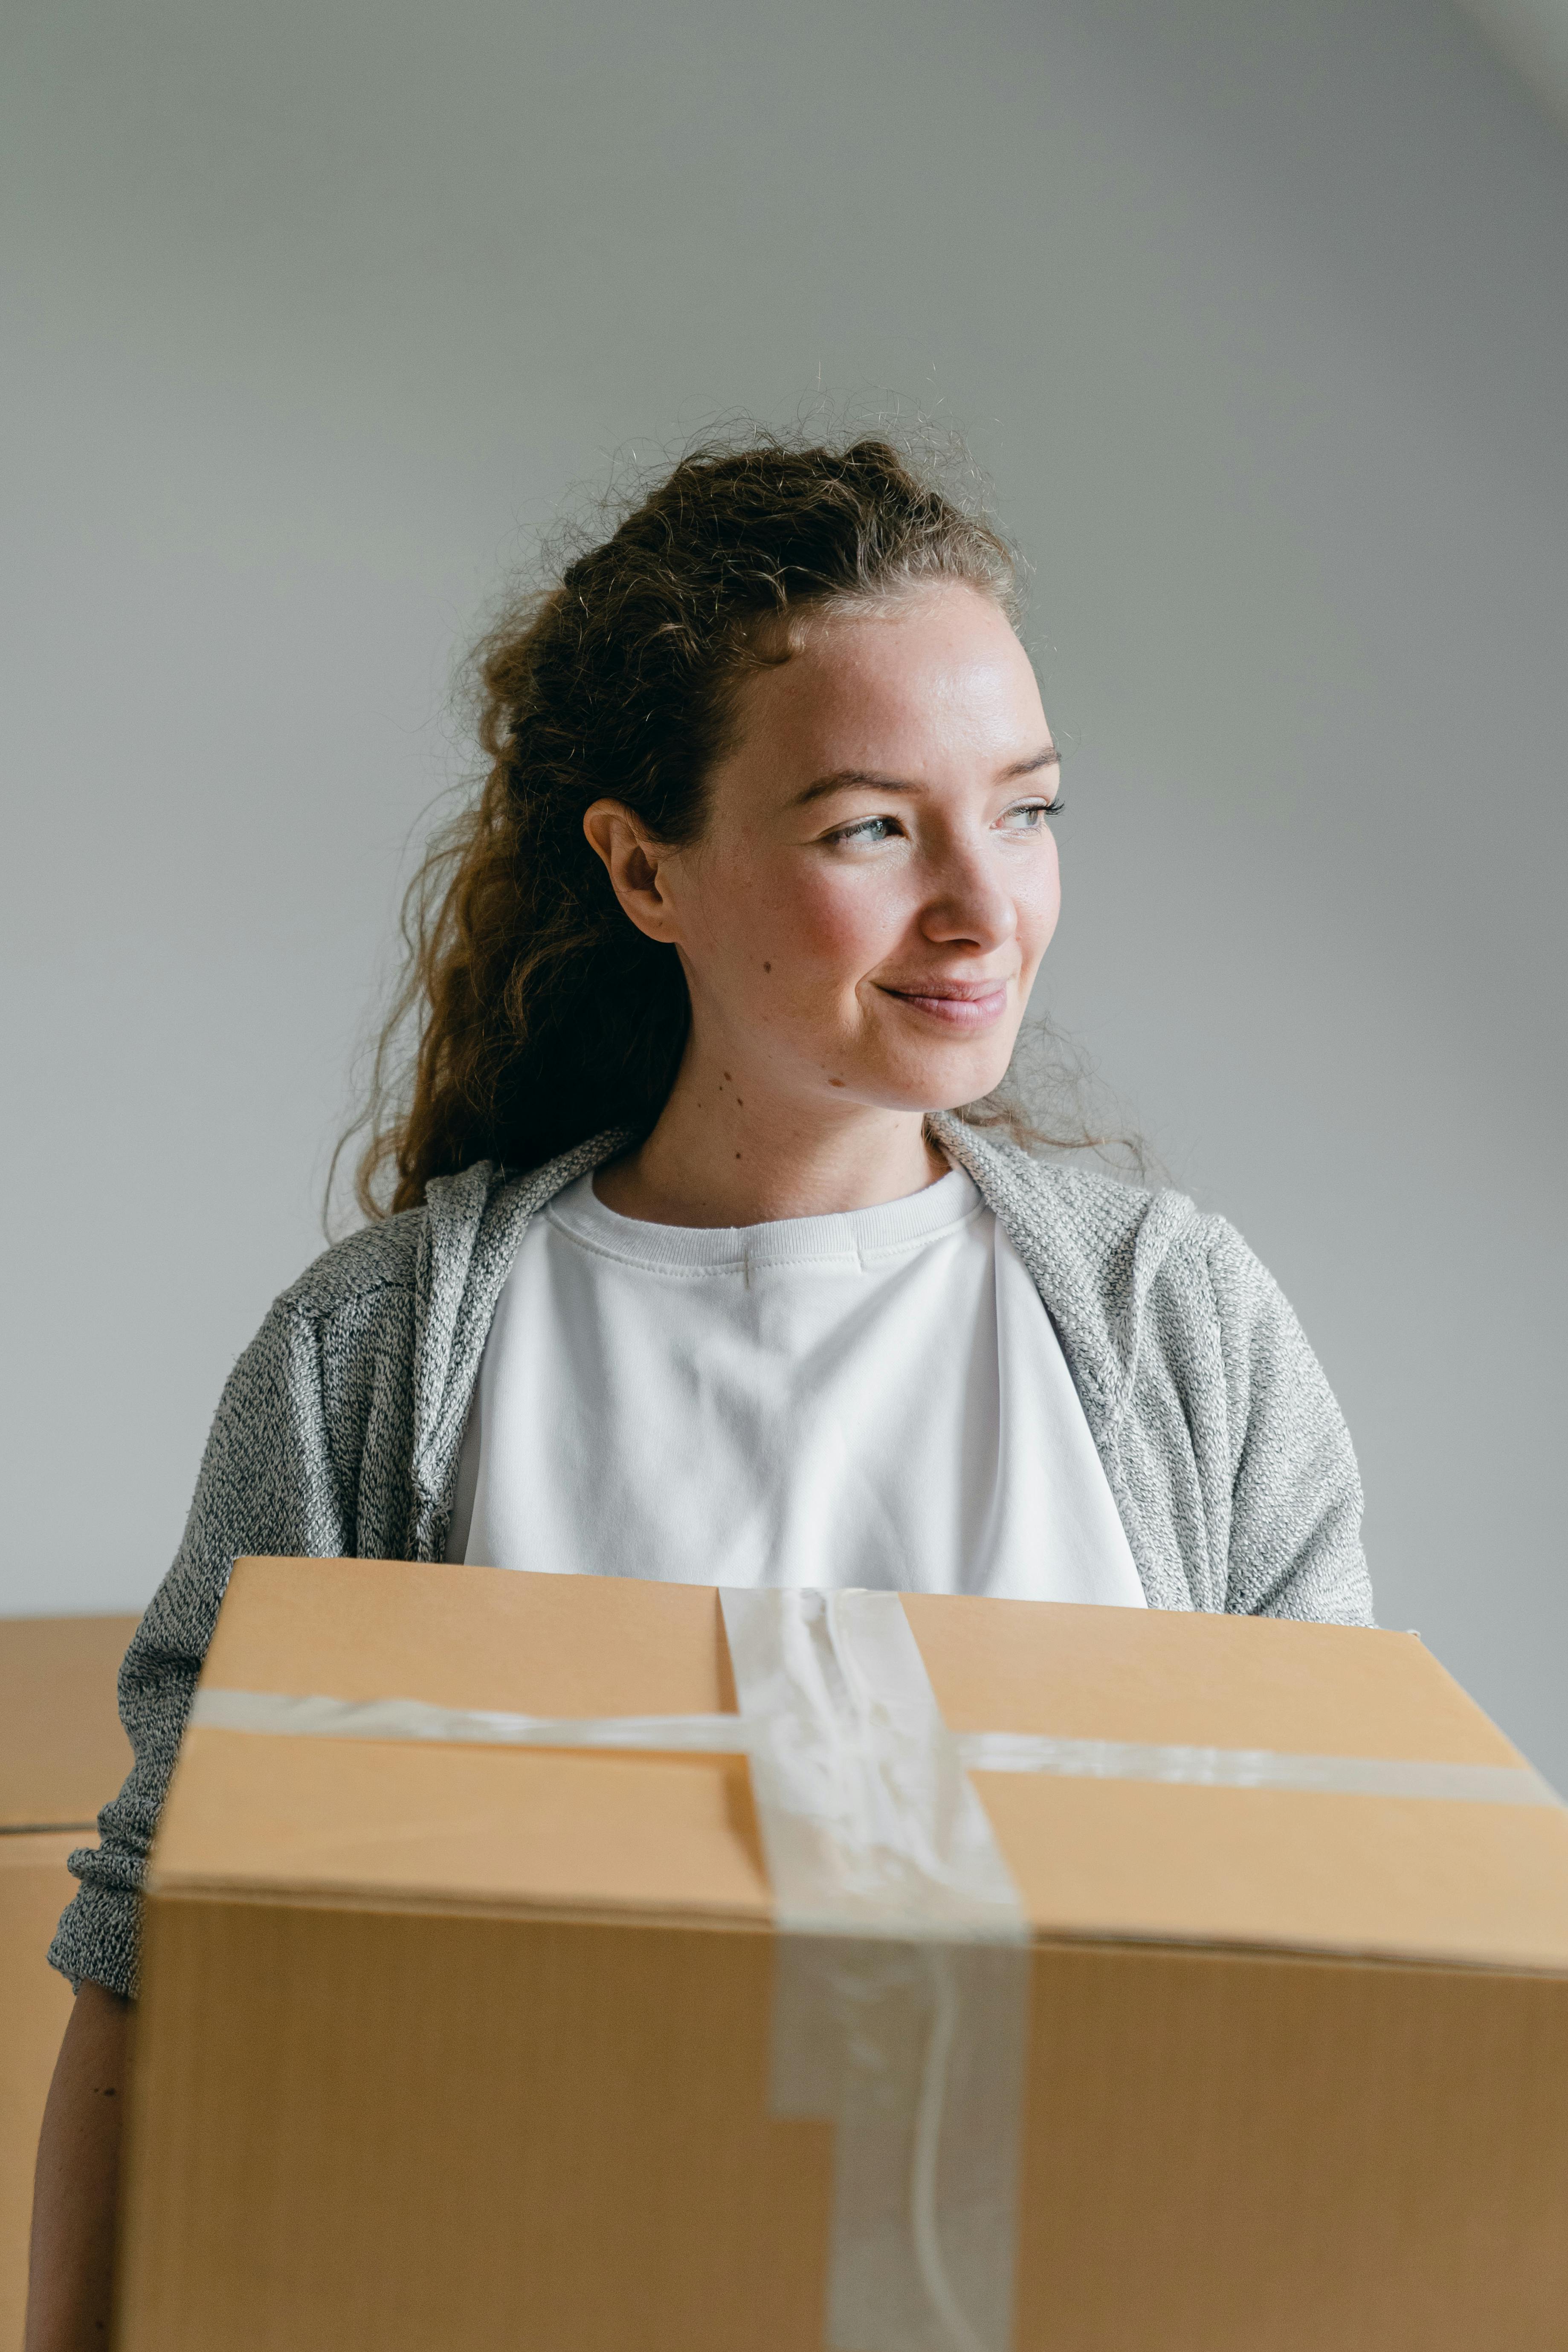 Una mujer sonriente sujetando una caja encintada | Fuente: Pexels